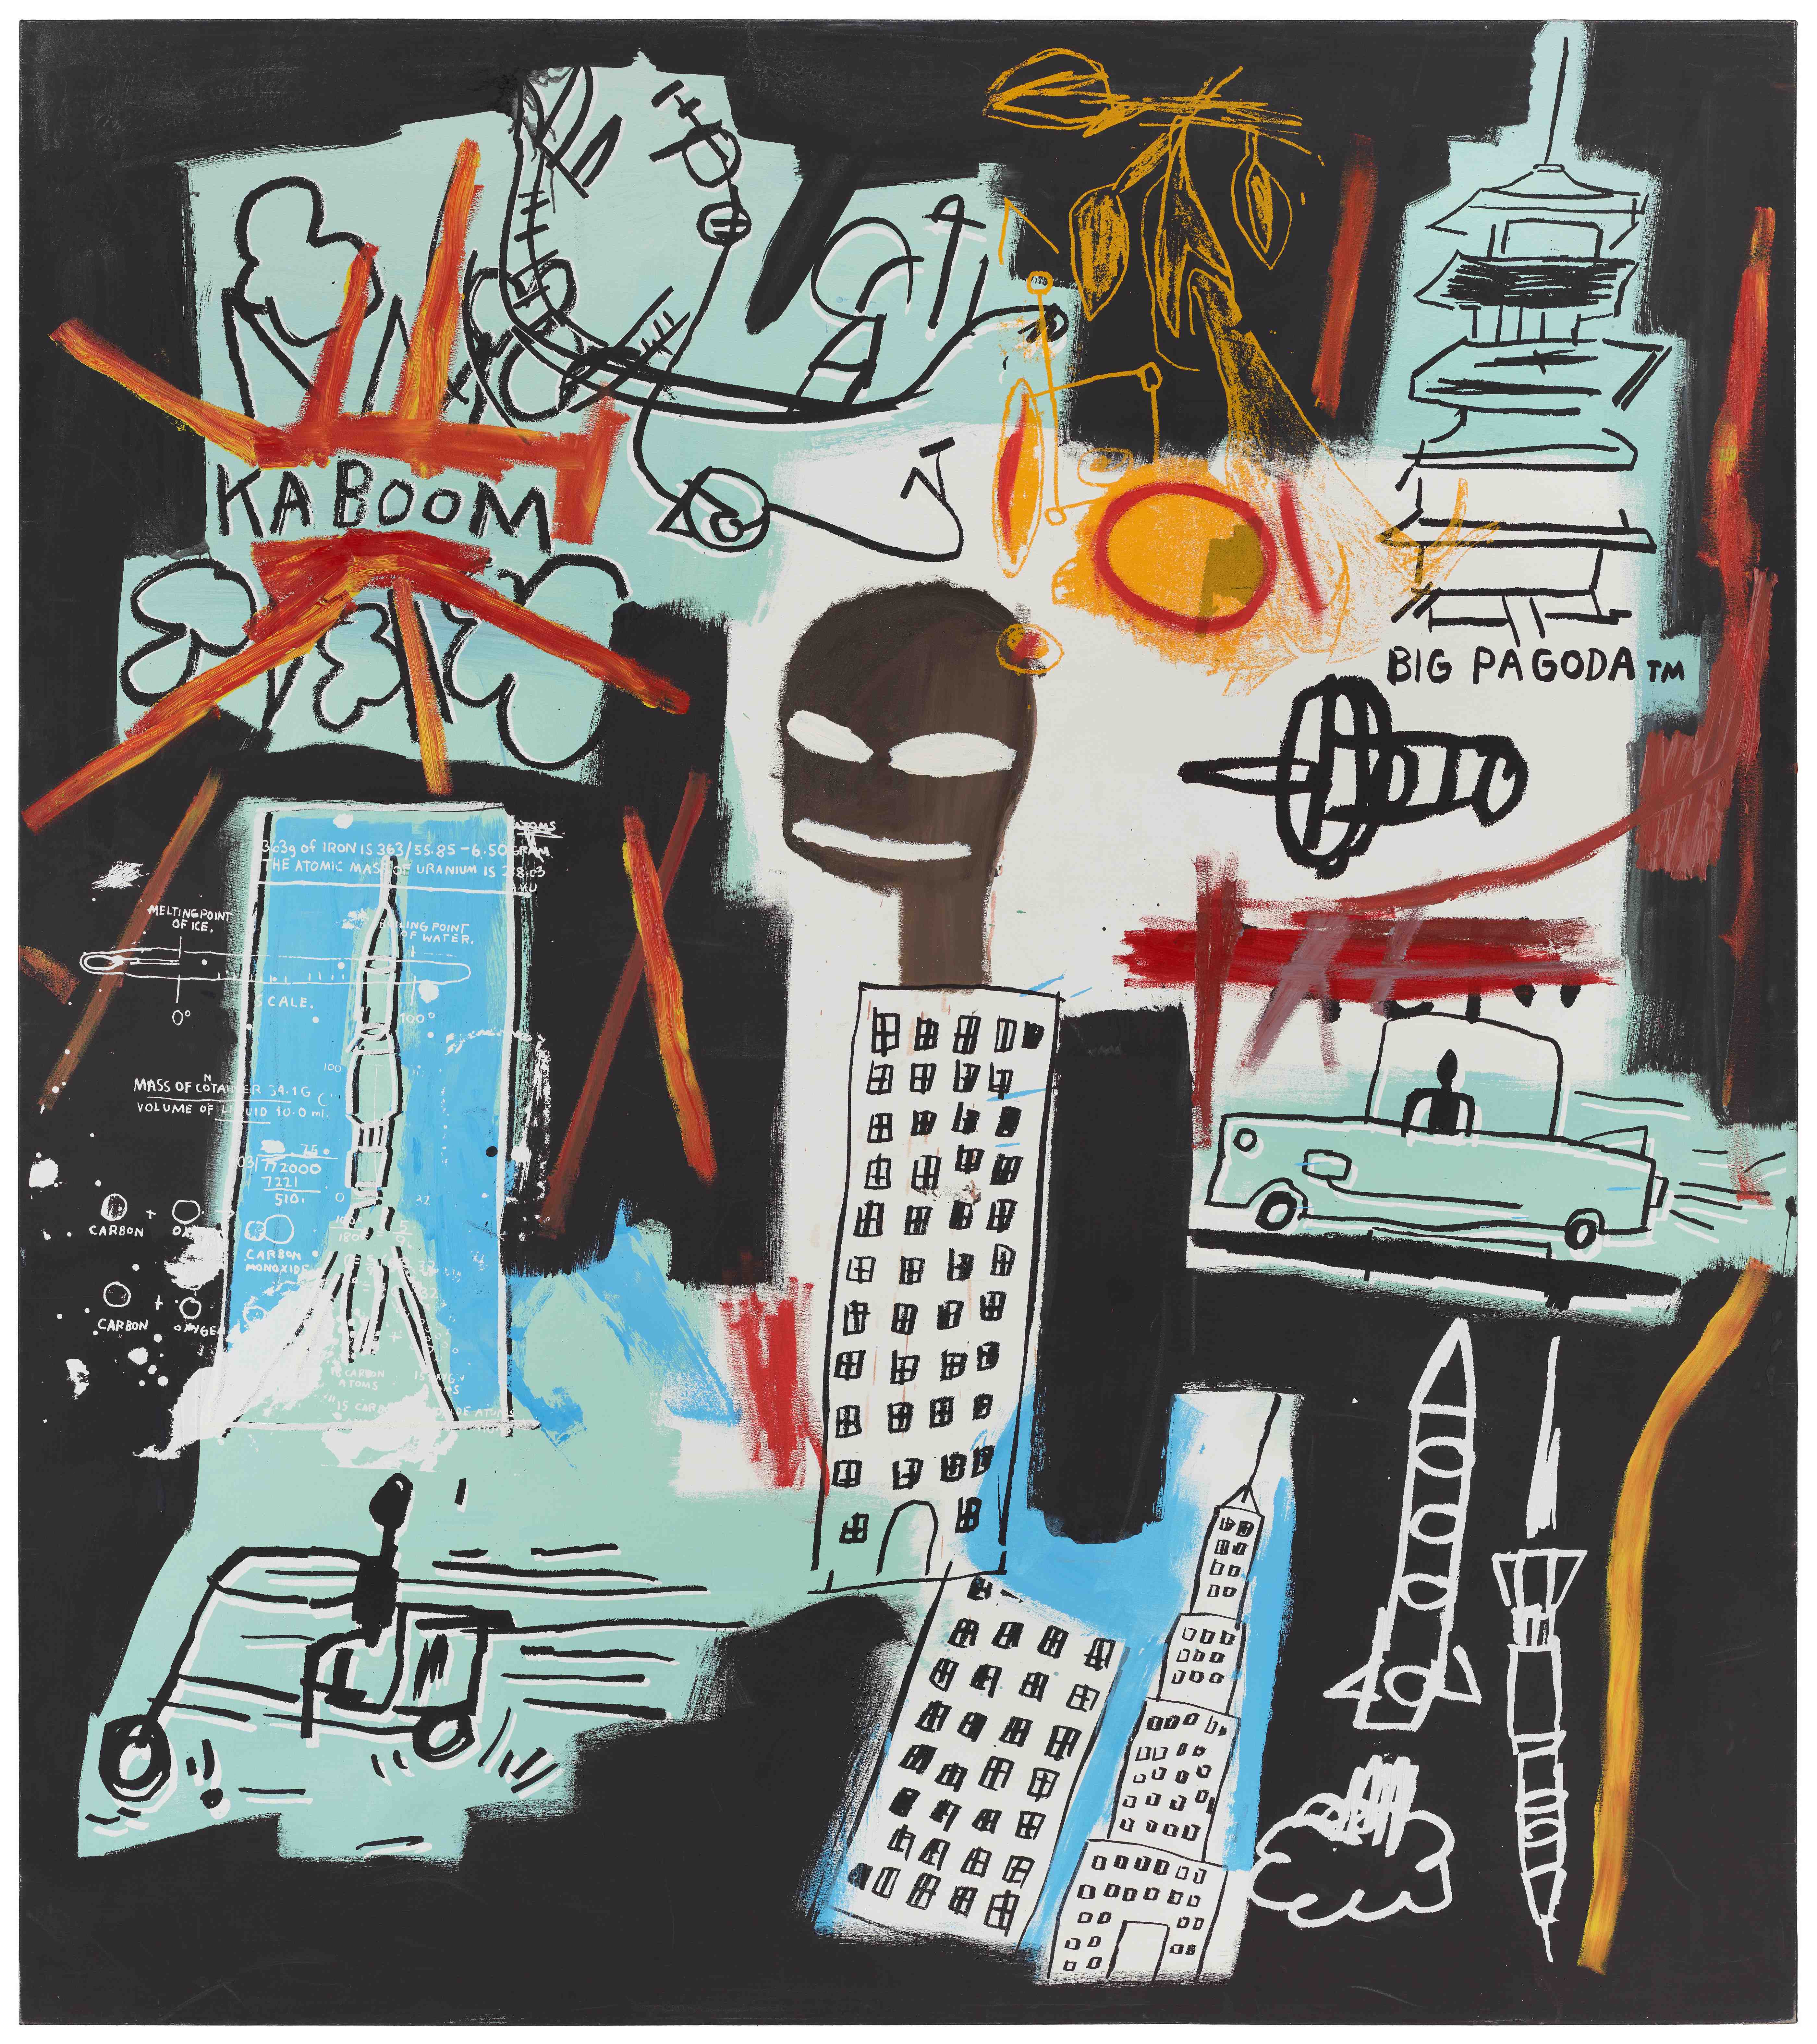 ジャン＝ミシェル・バスキア
Carbon/Oxygen, 1984
Hall Collection
Artwork © Estate of Jean-Michel Basquiat.